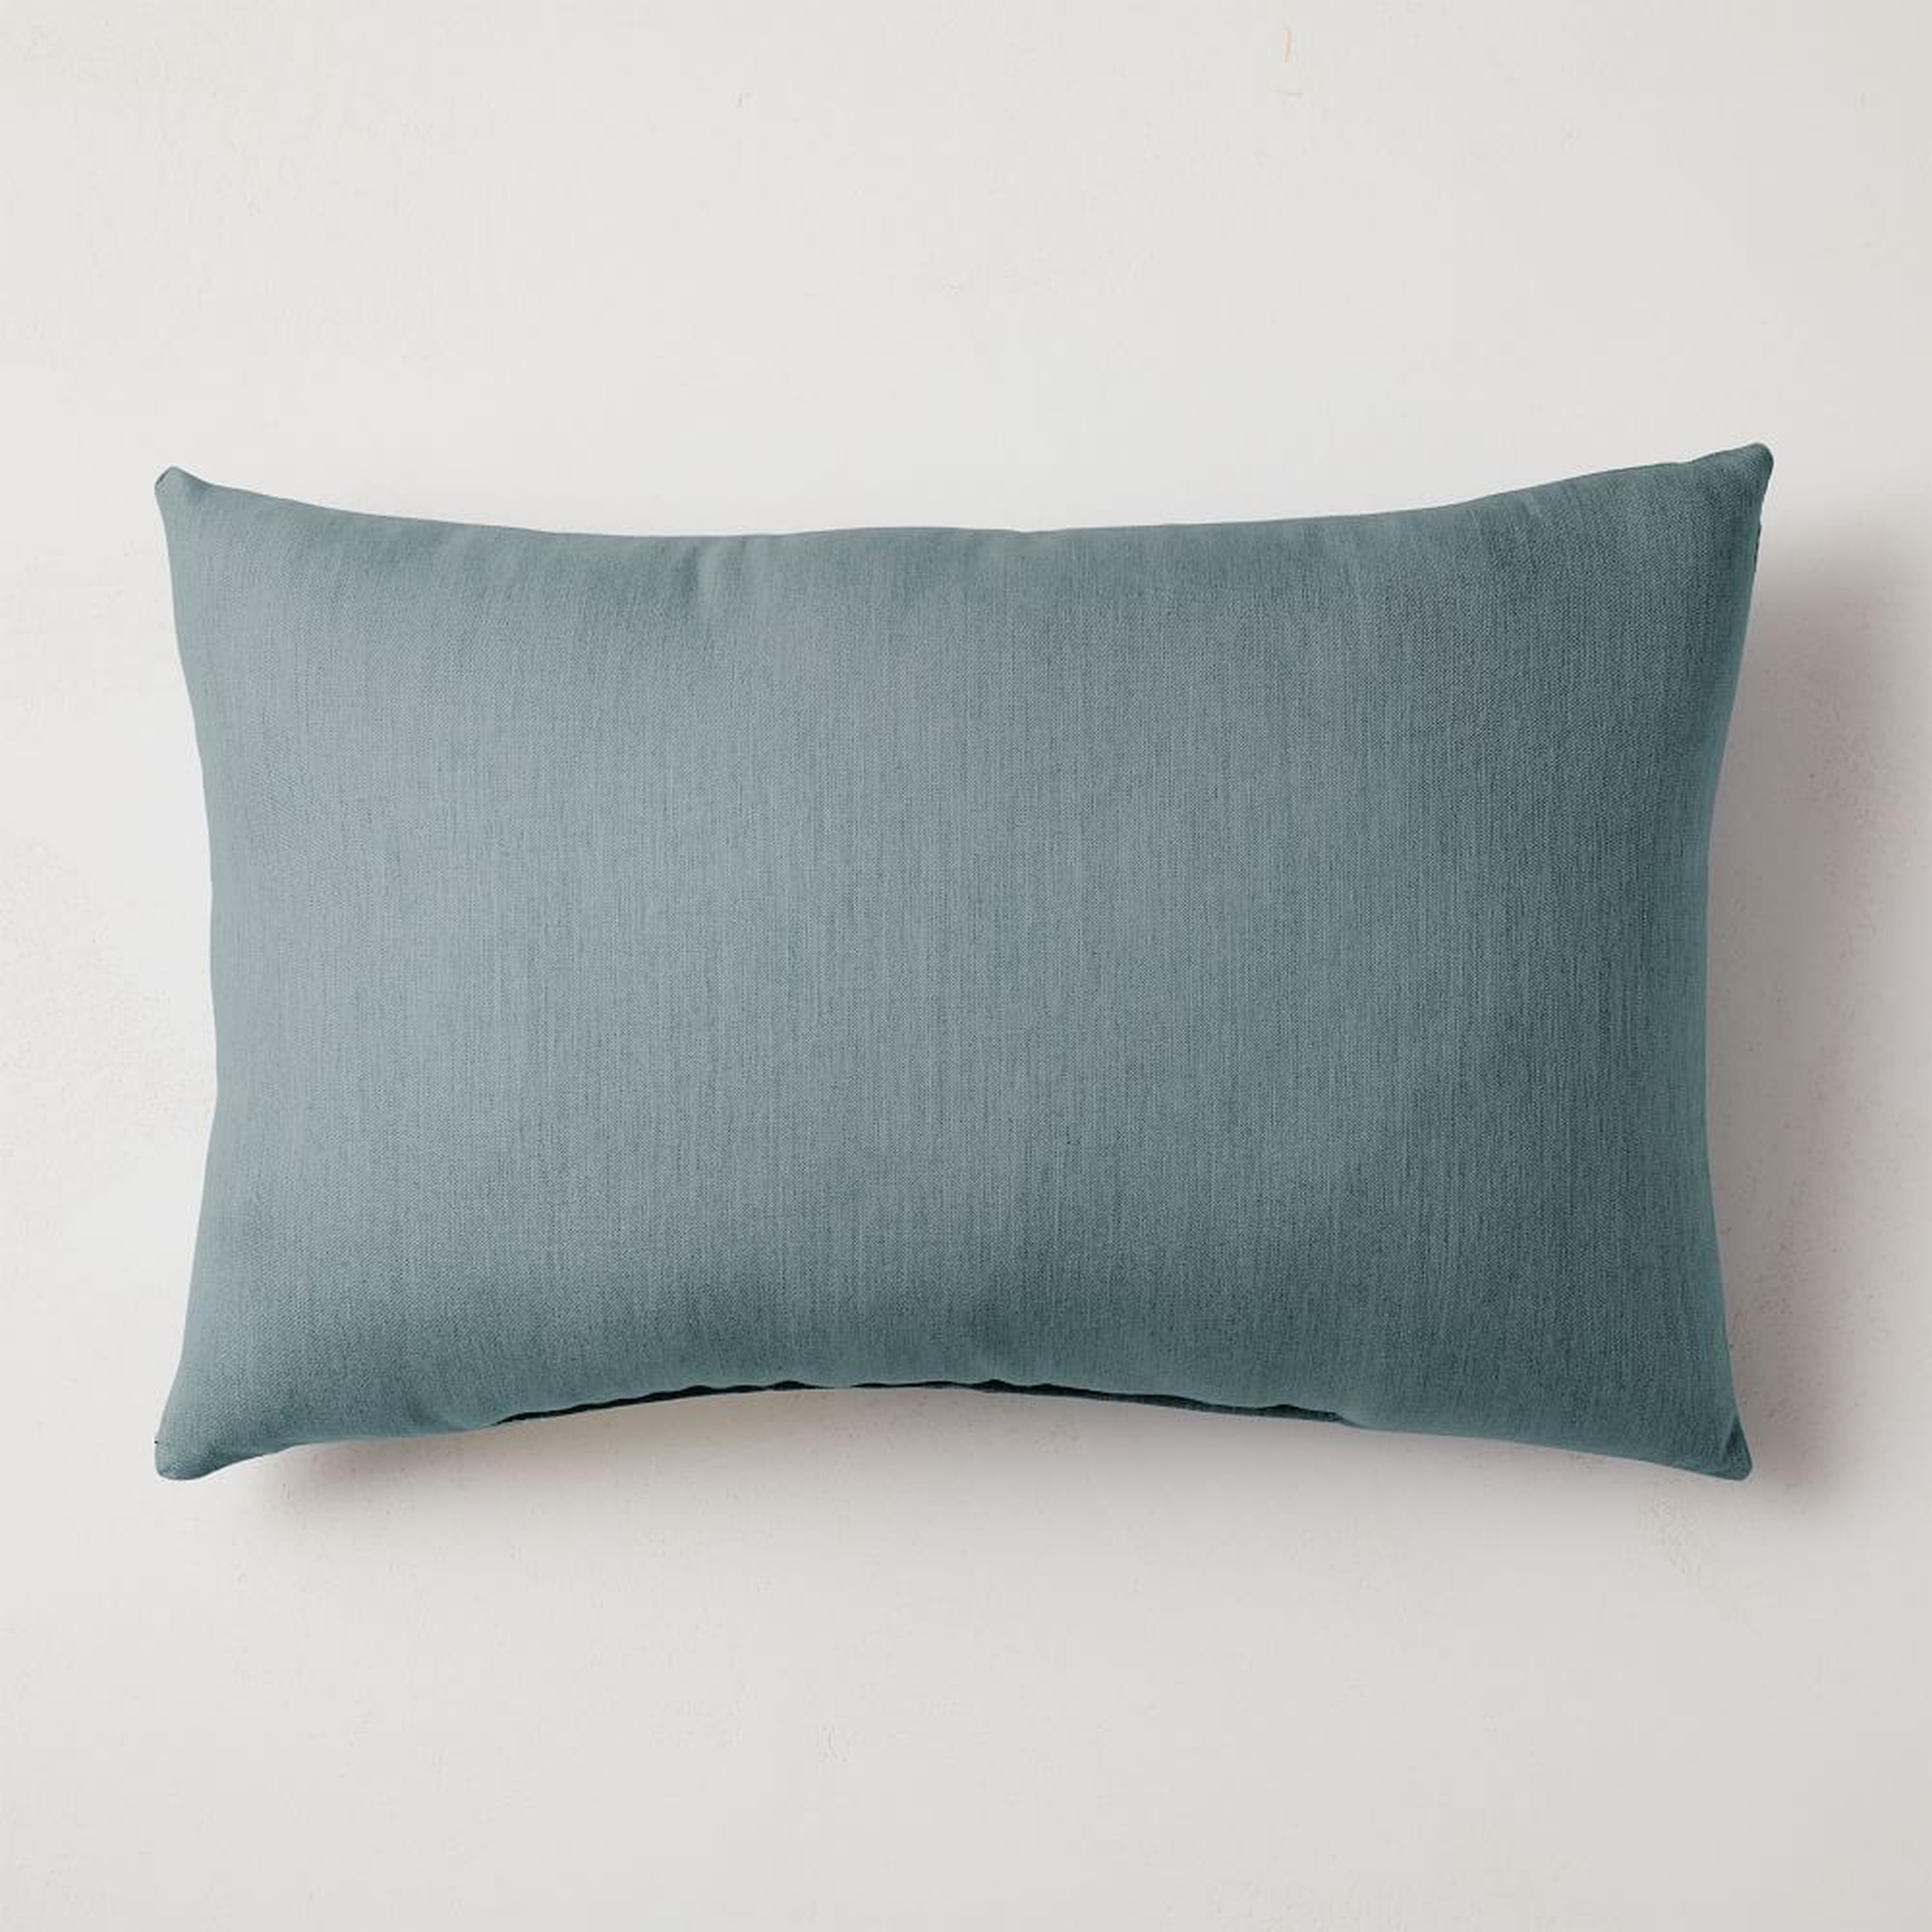 Sunbrella Indoor/Outdoor Cast Pillow, 16"x24", Lagoon - West Elm